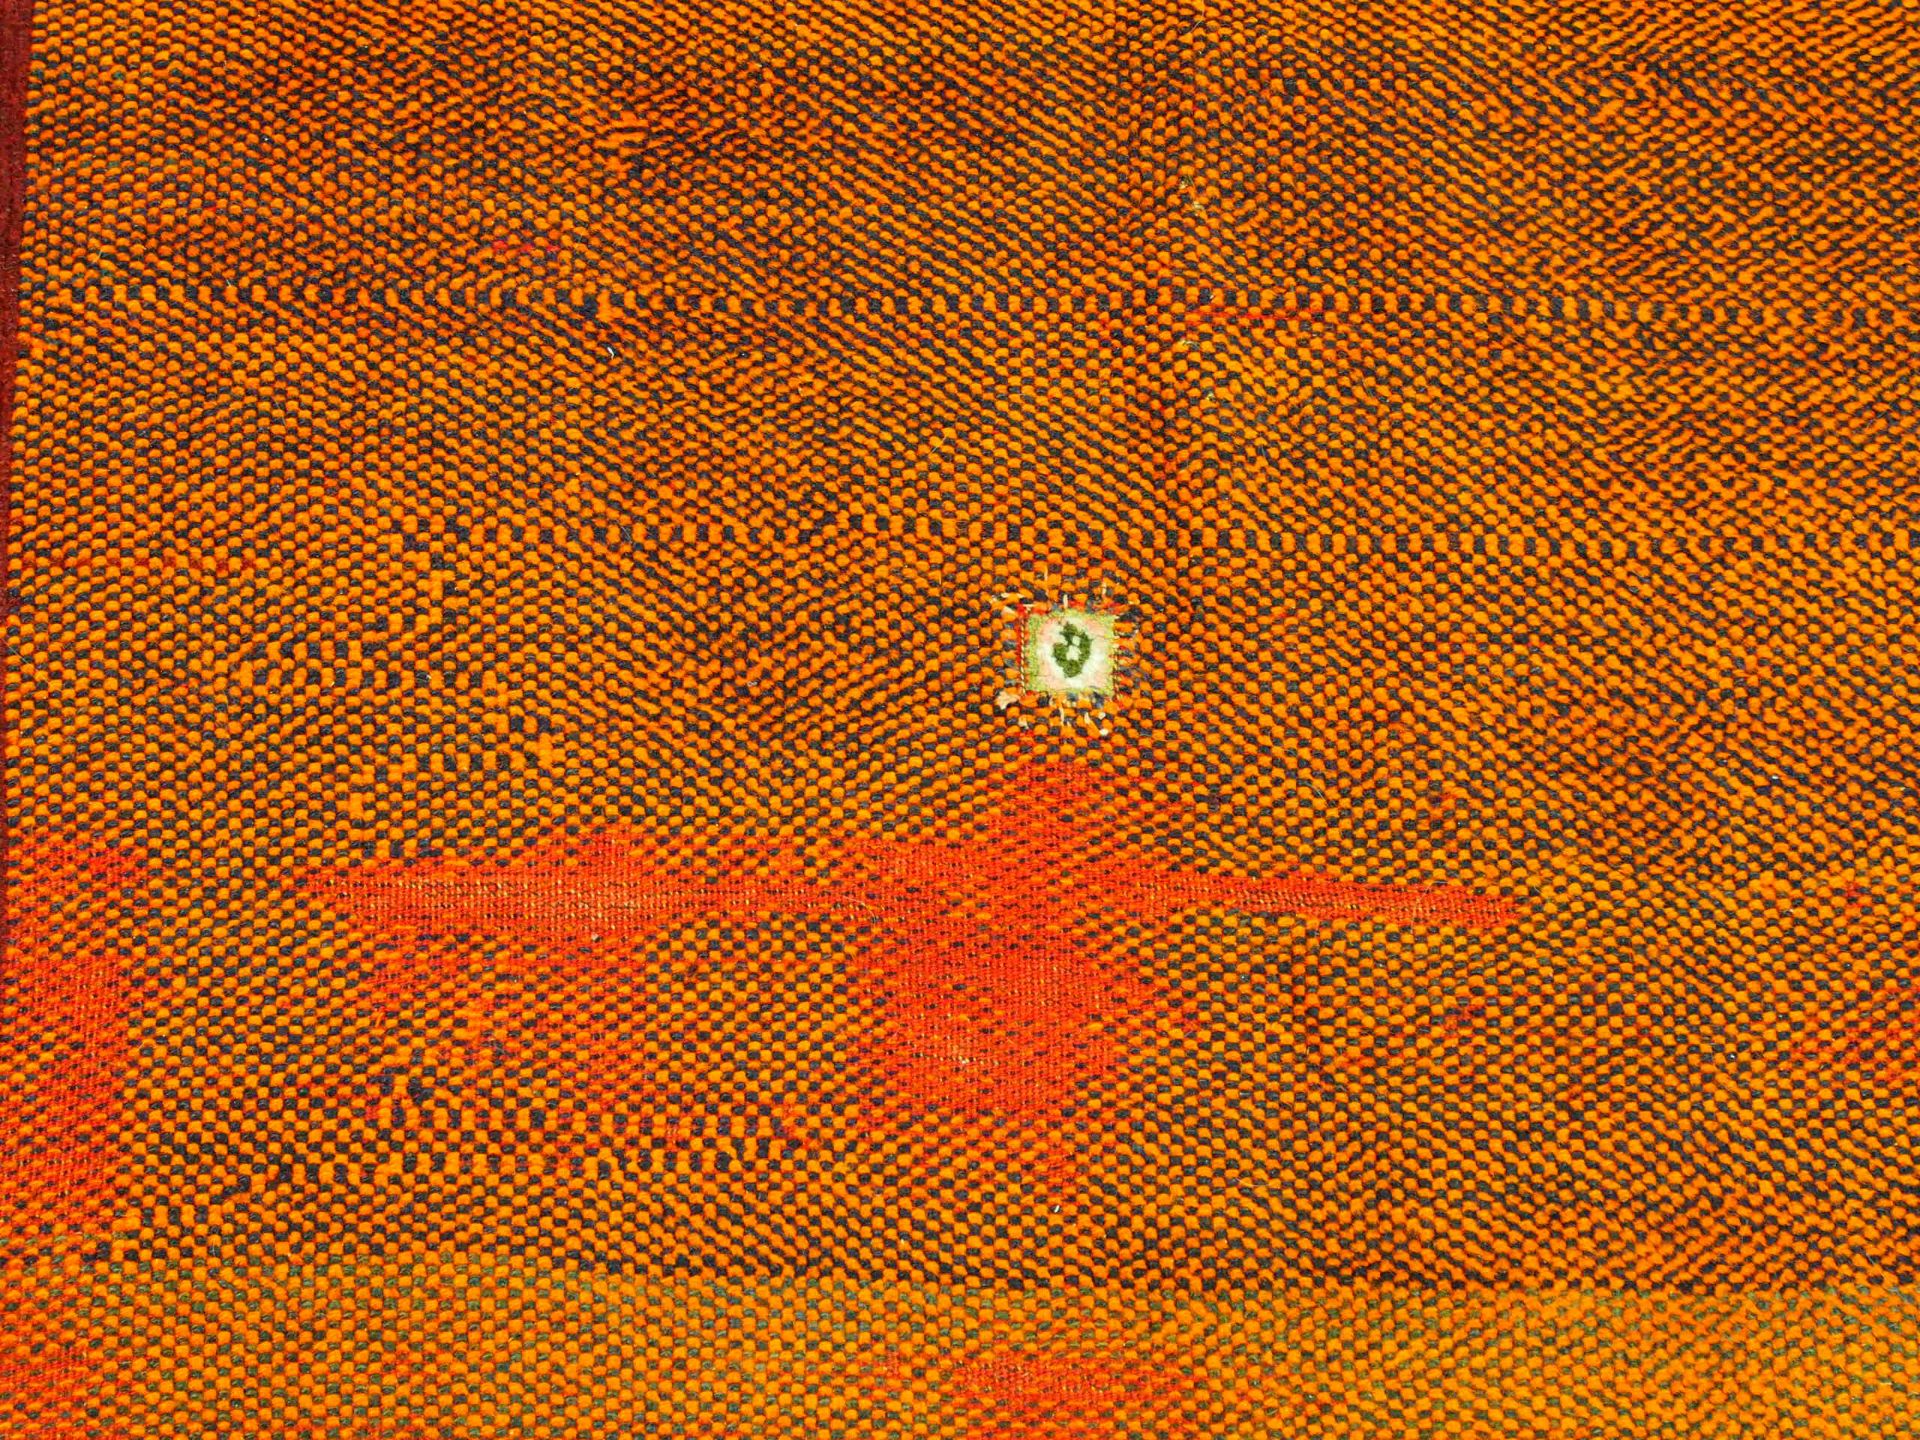 Gashgai, datiert 1349 (=1930), 214 x 114 cm, Zustand C - Image 3 of 4